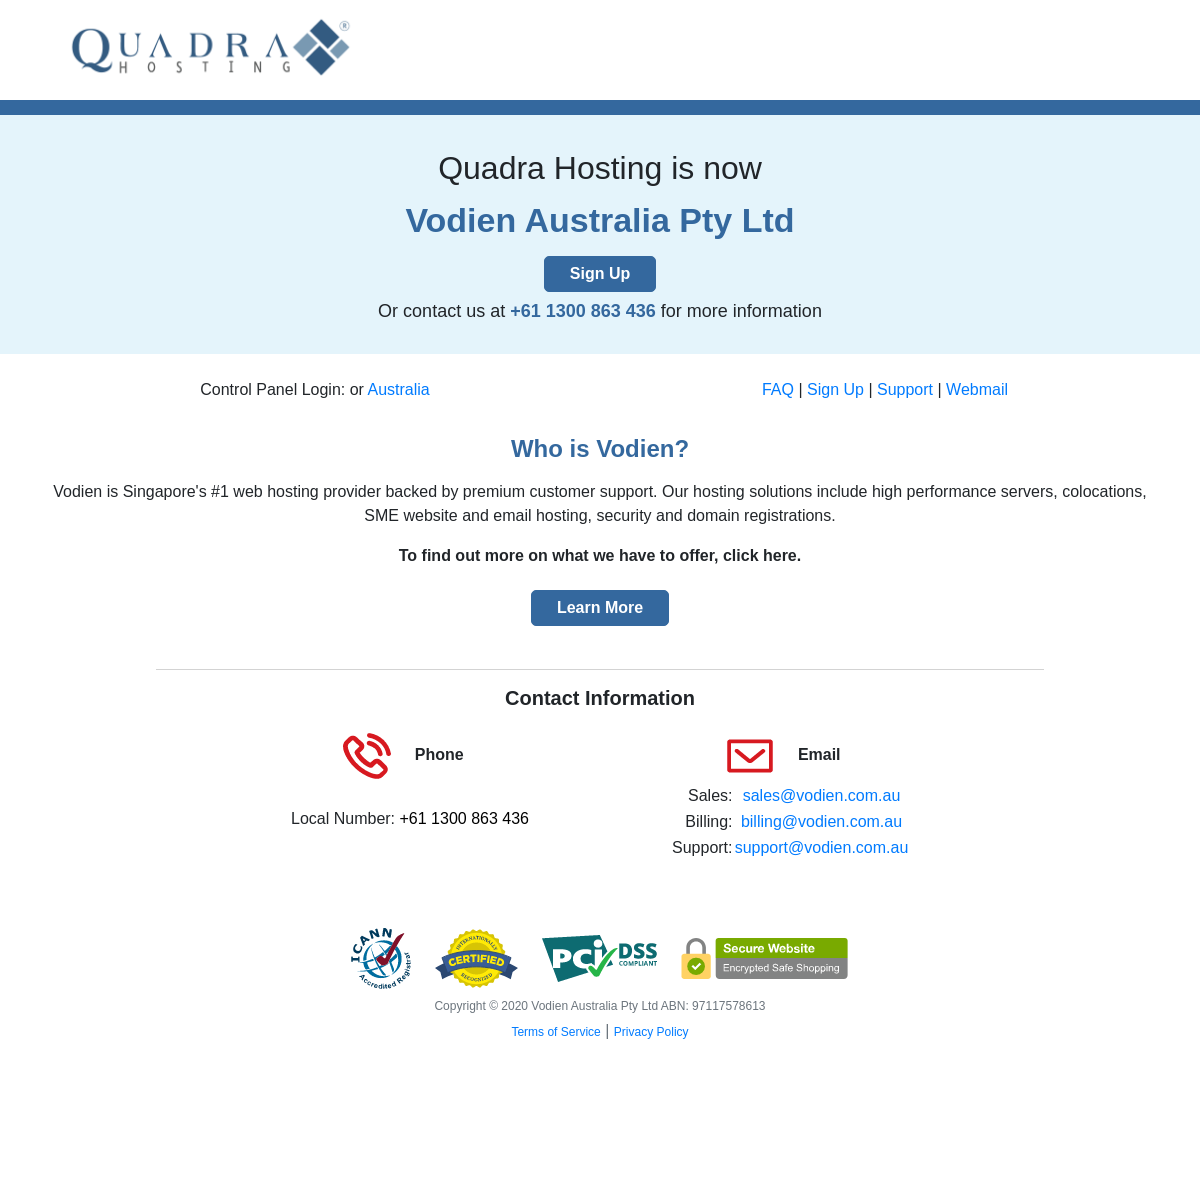 A complete backup of quadrahosting.com.au